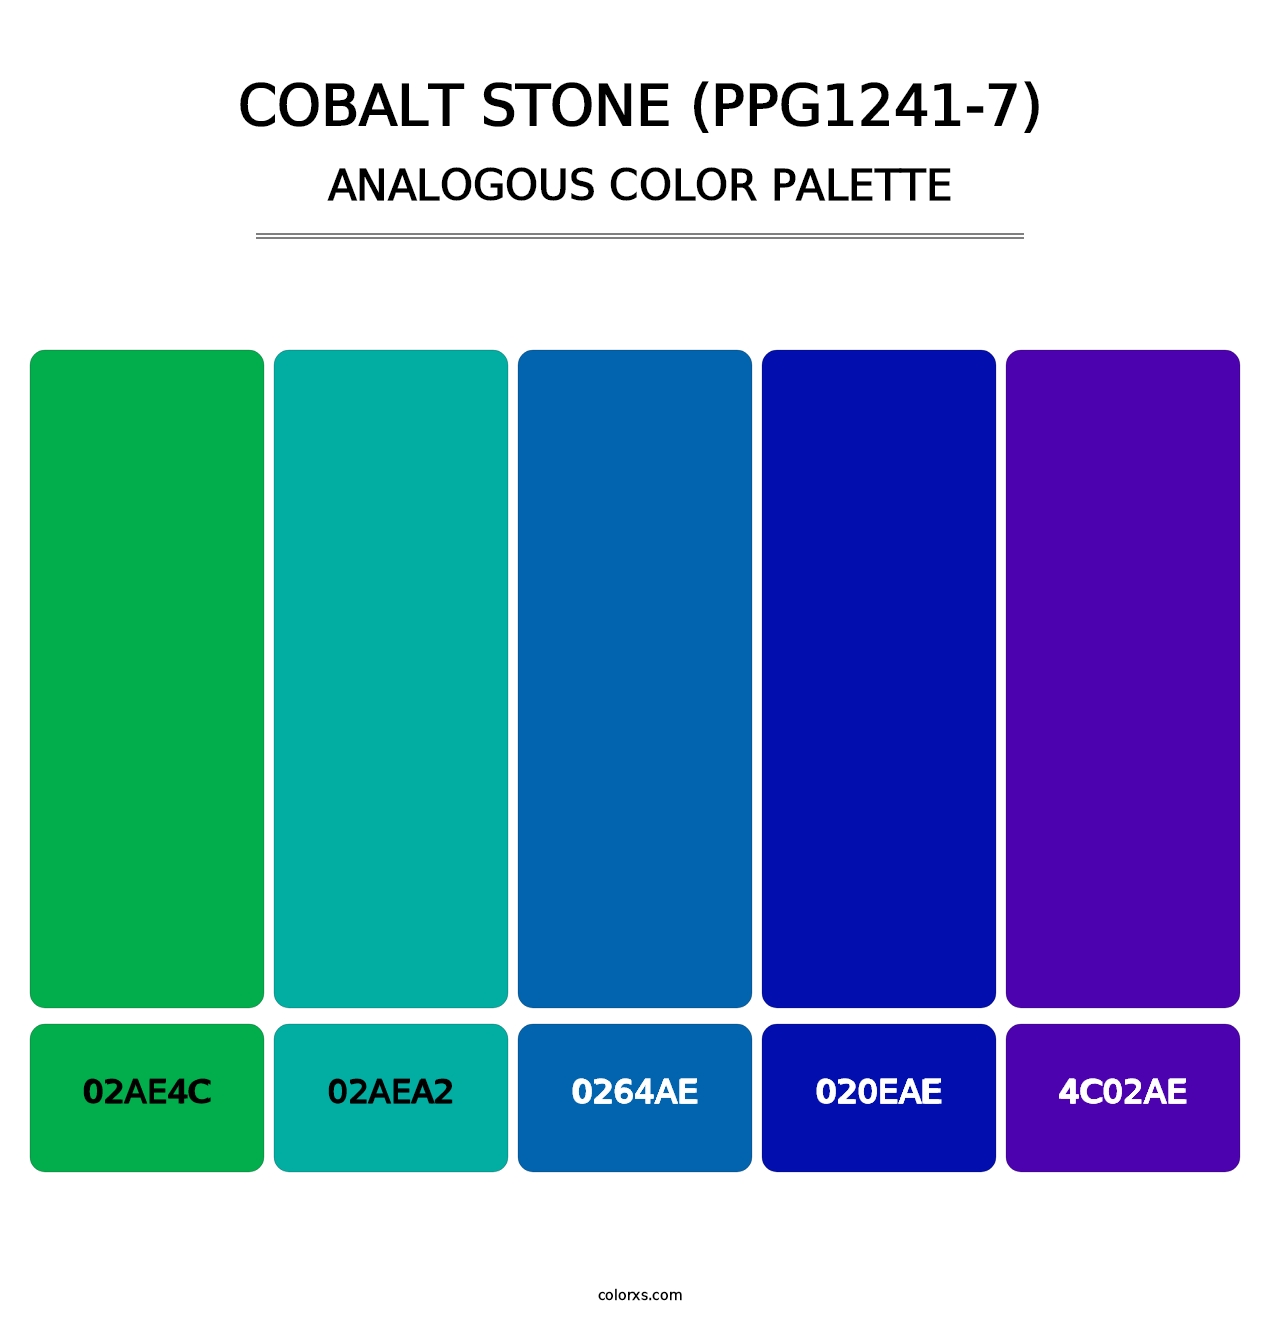 Cobalt Stone (PPG1241-7) - Analogous Color Palette